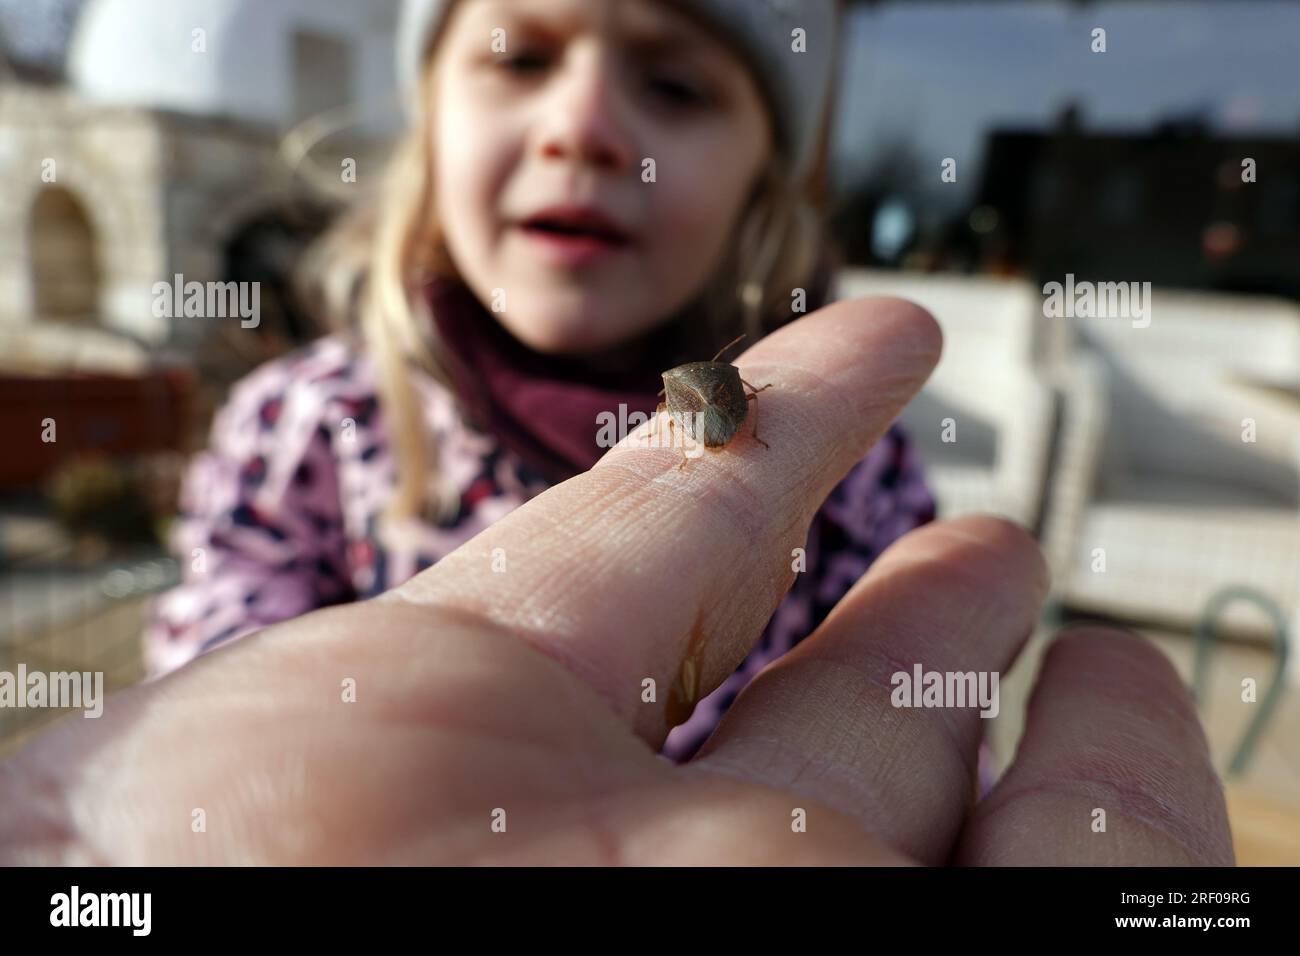 Kleines kind beobachtet eine Wanze auf einem Finger Foto Stock